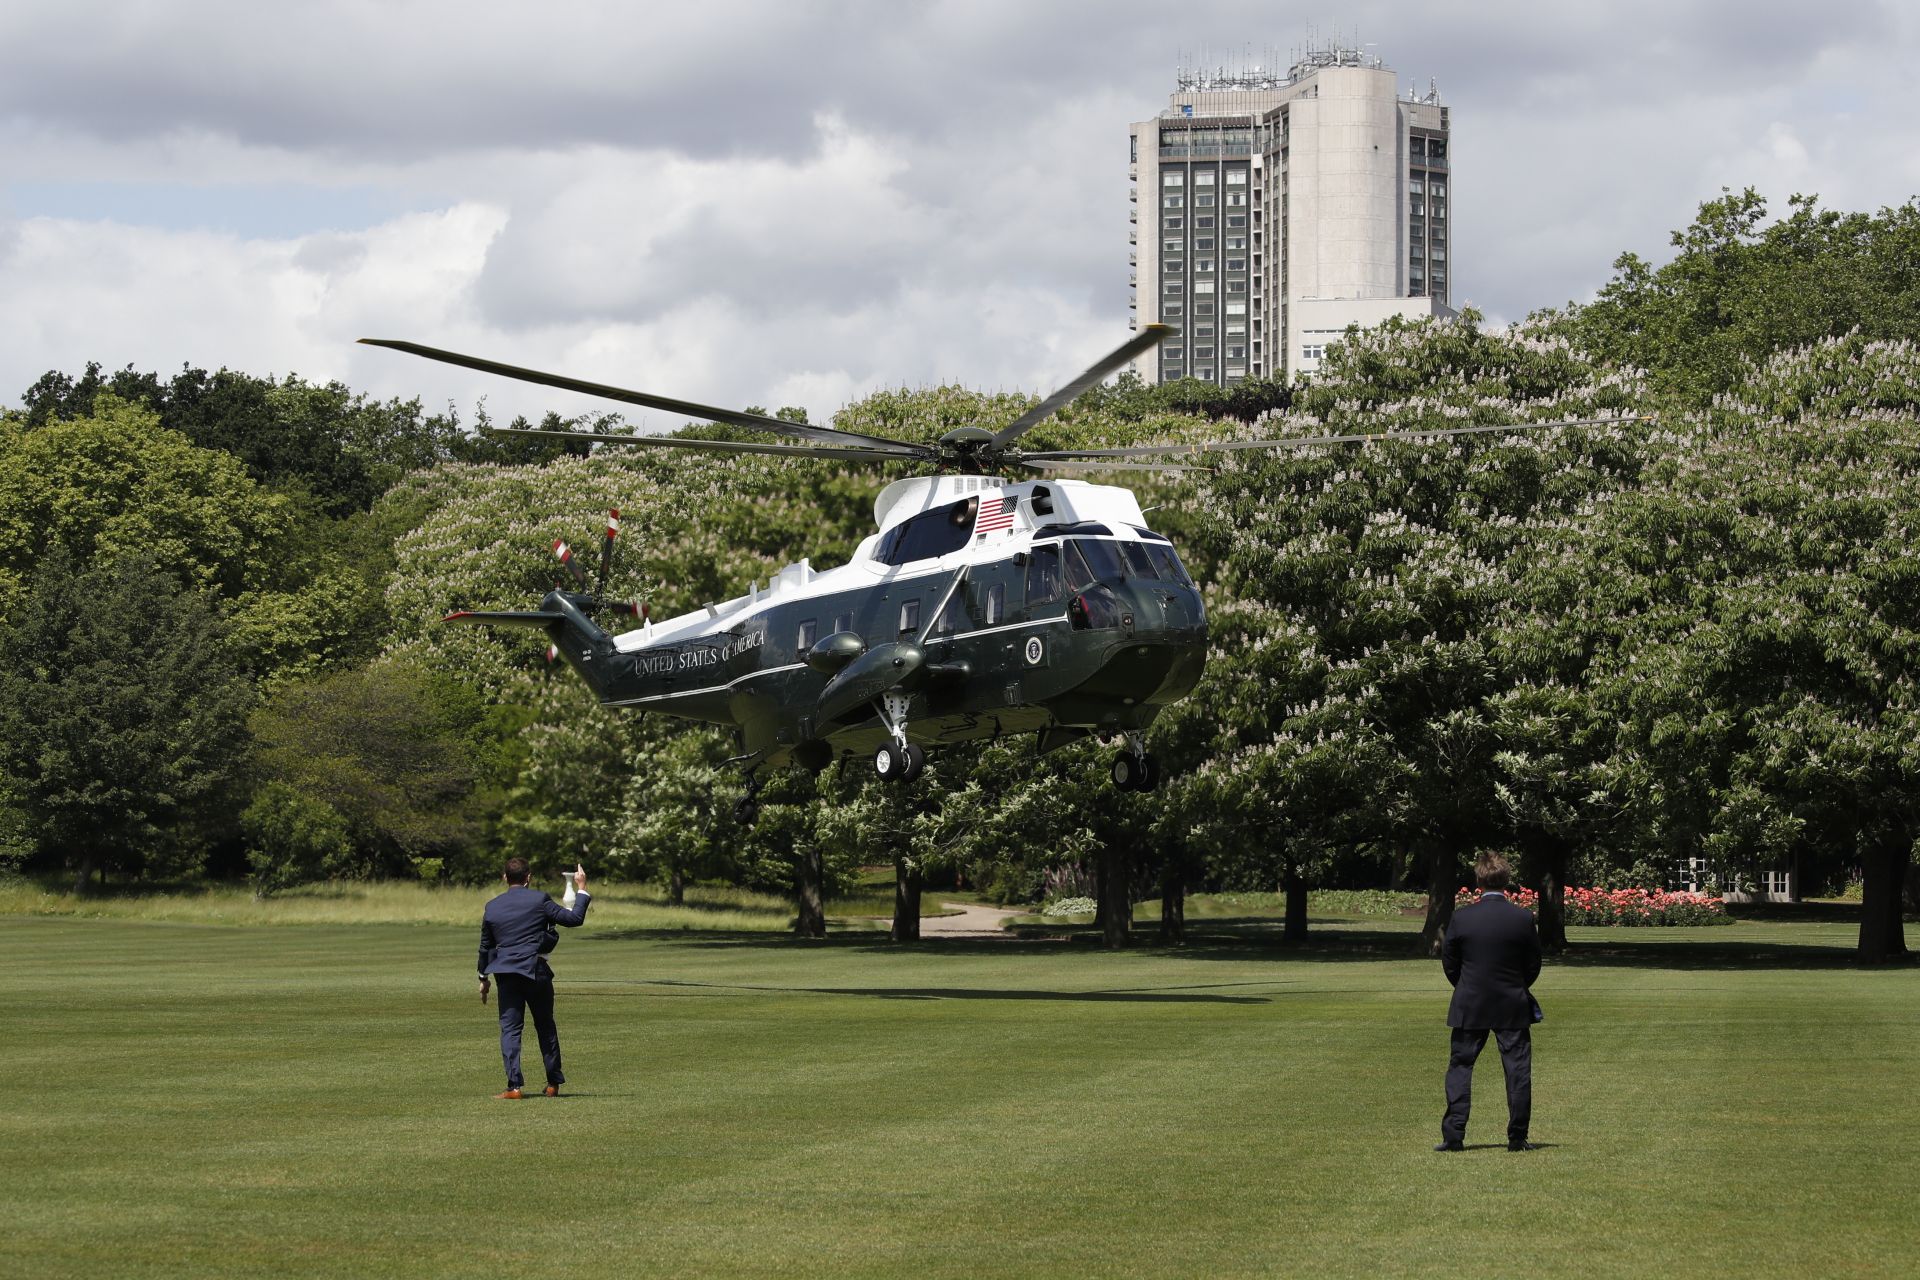 А по-късно те кацнаха с хеликоптер край Бъкингамския дворец, където ги очаква кралицата